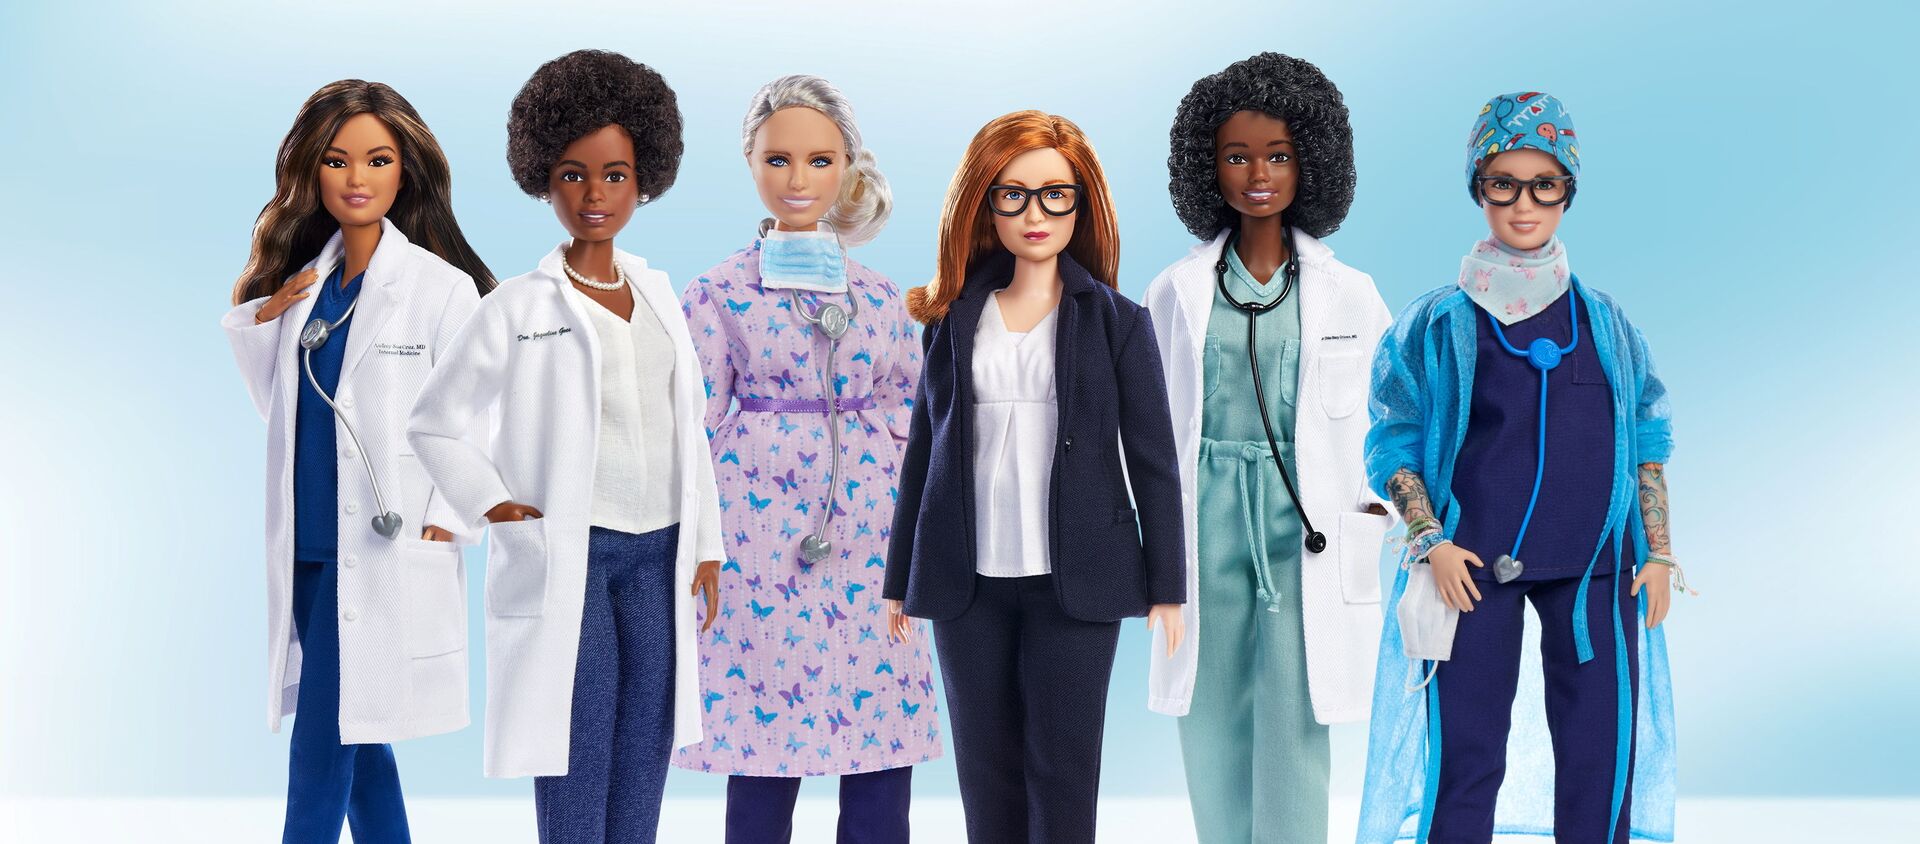 Oyuncak şirketi Mattel, tıp ve sağlık alanında öne çıkan 6 kadın için Barbie 'rol model' serisini çıkardı. - Sputnik Türkiye, 1920, 04.08.2021